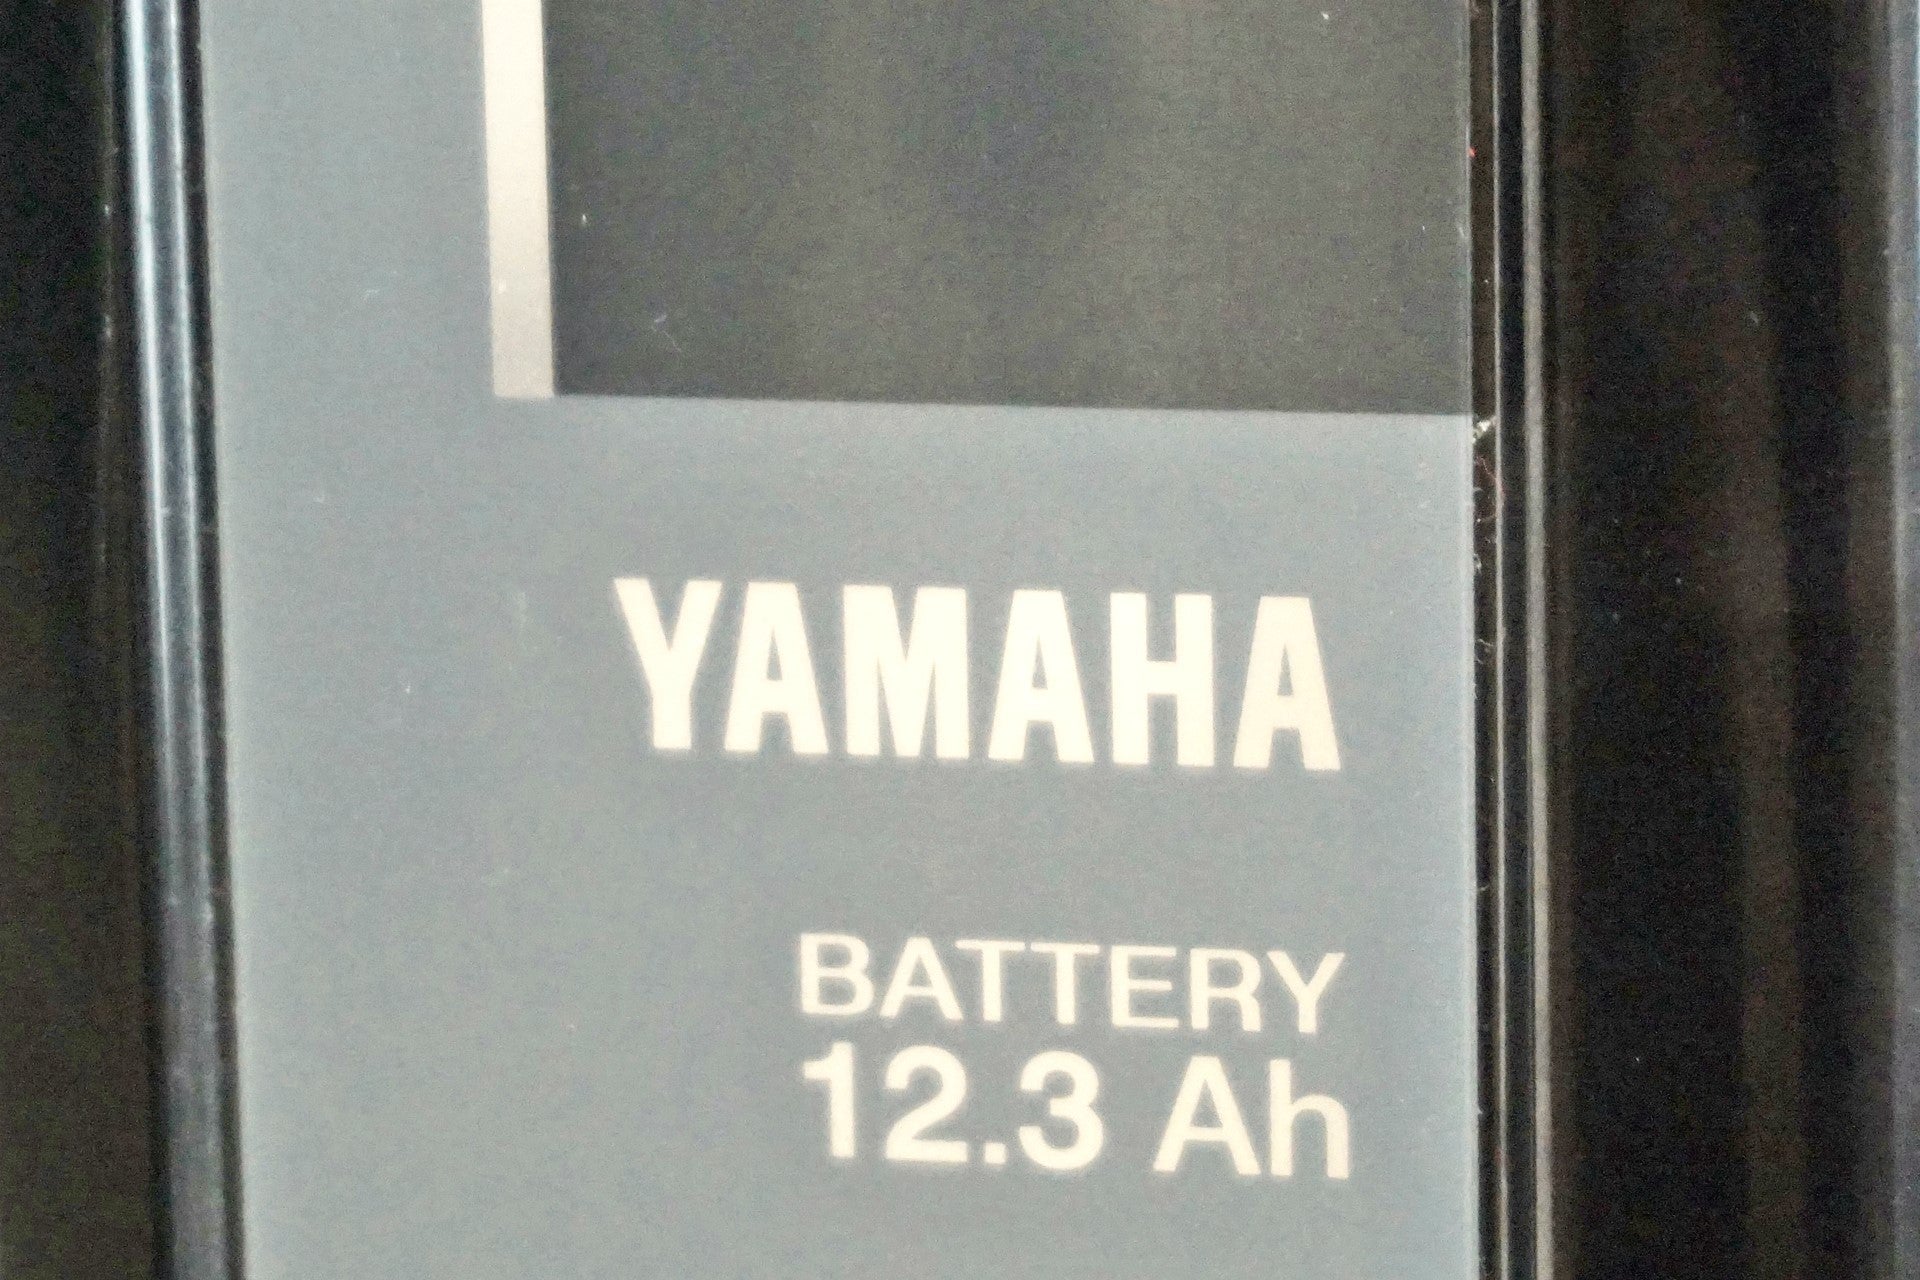 YAMAHA 「ヤマハ」 PAS CITY-SP5 2020年モデル 20インチ 電動アシスト自転車 / 有明ガーデン店